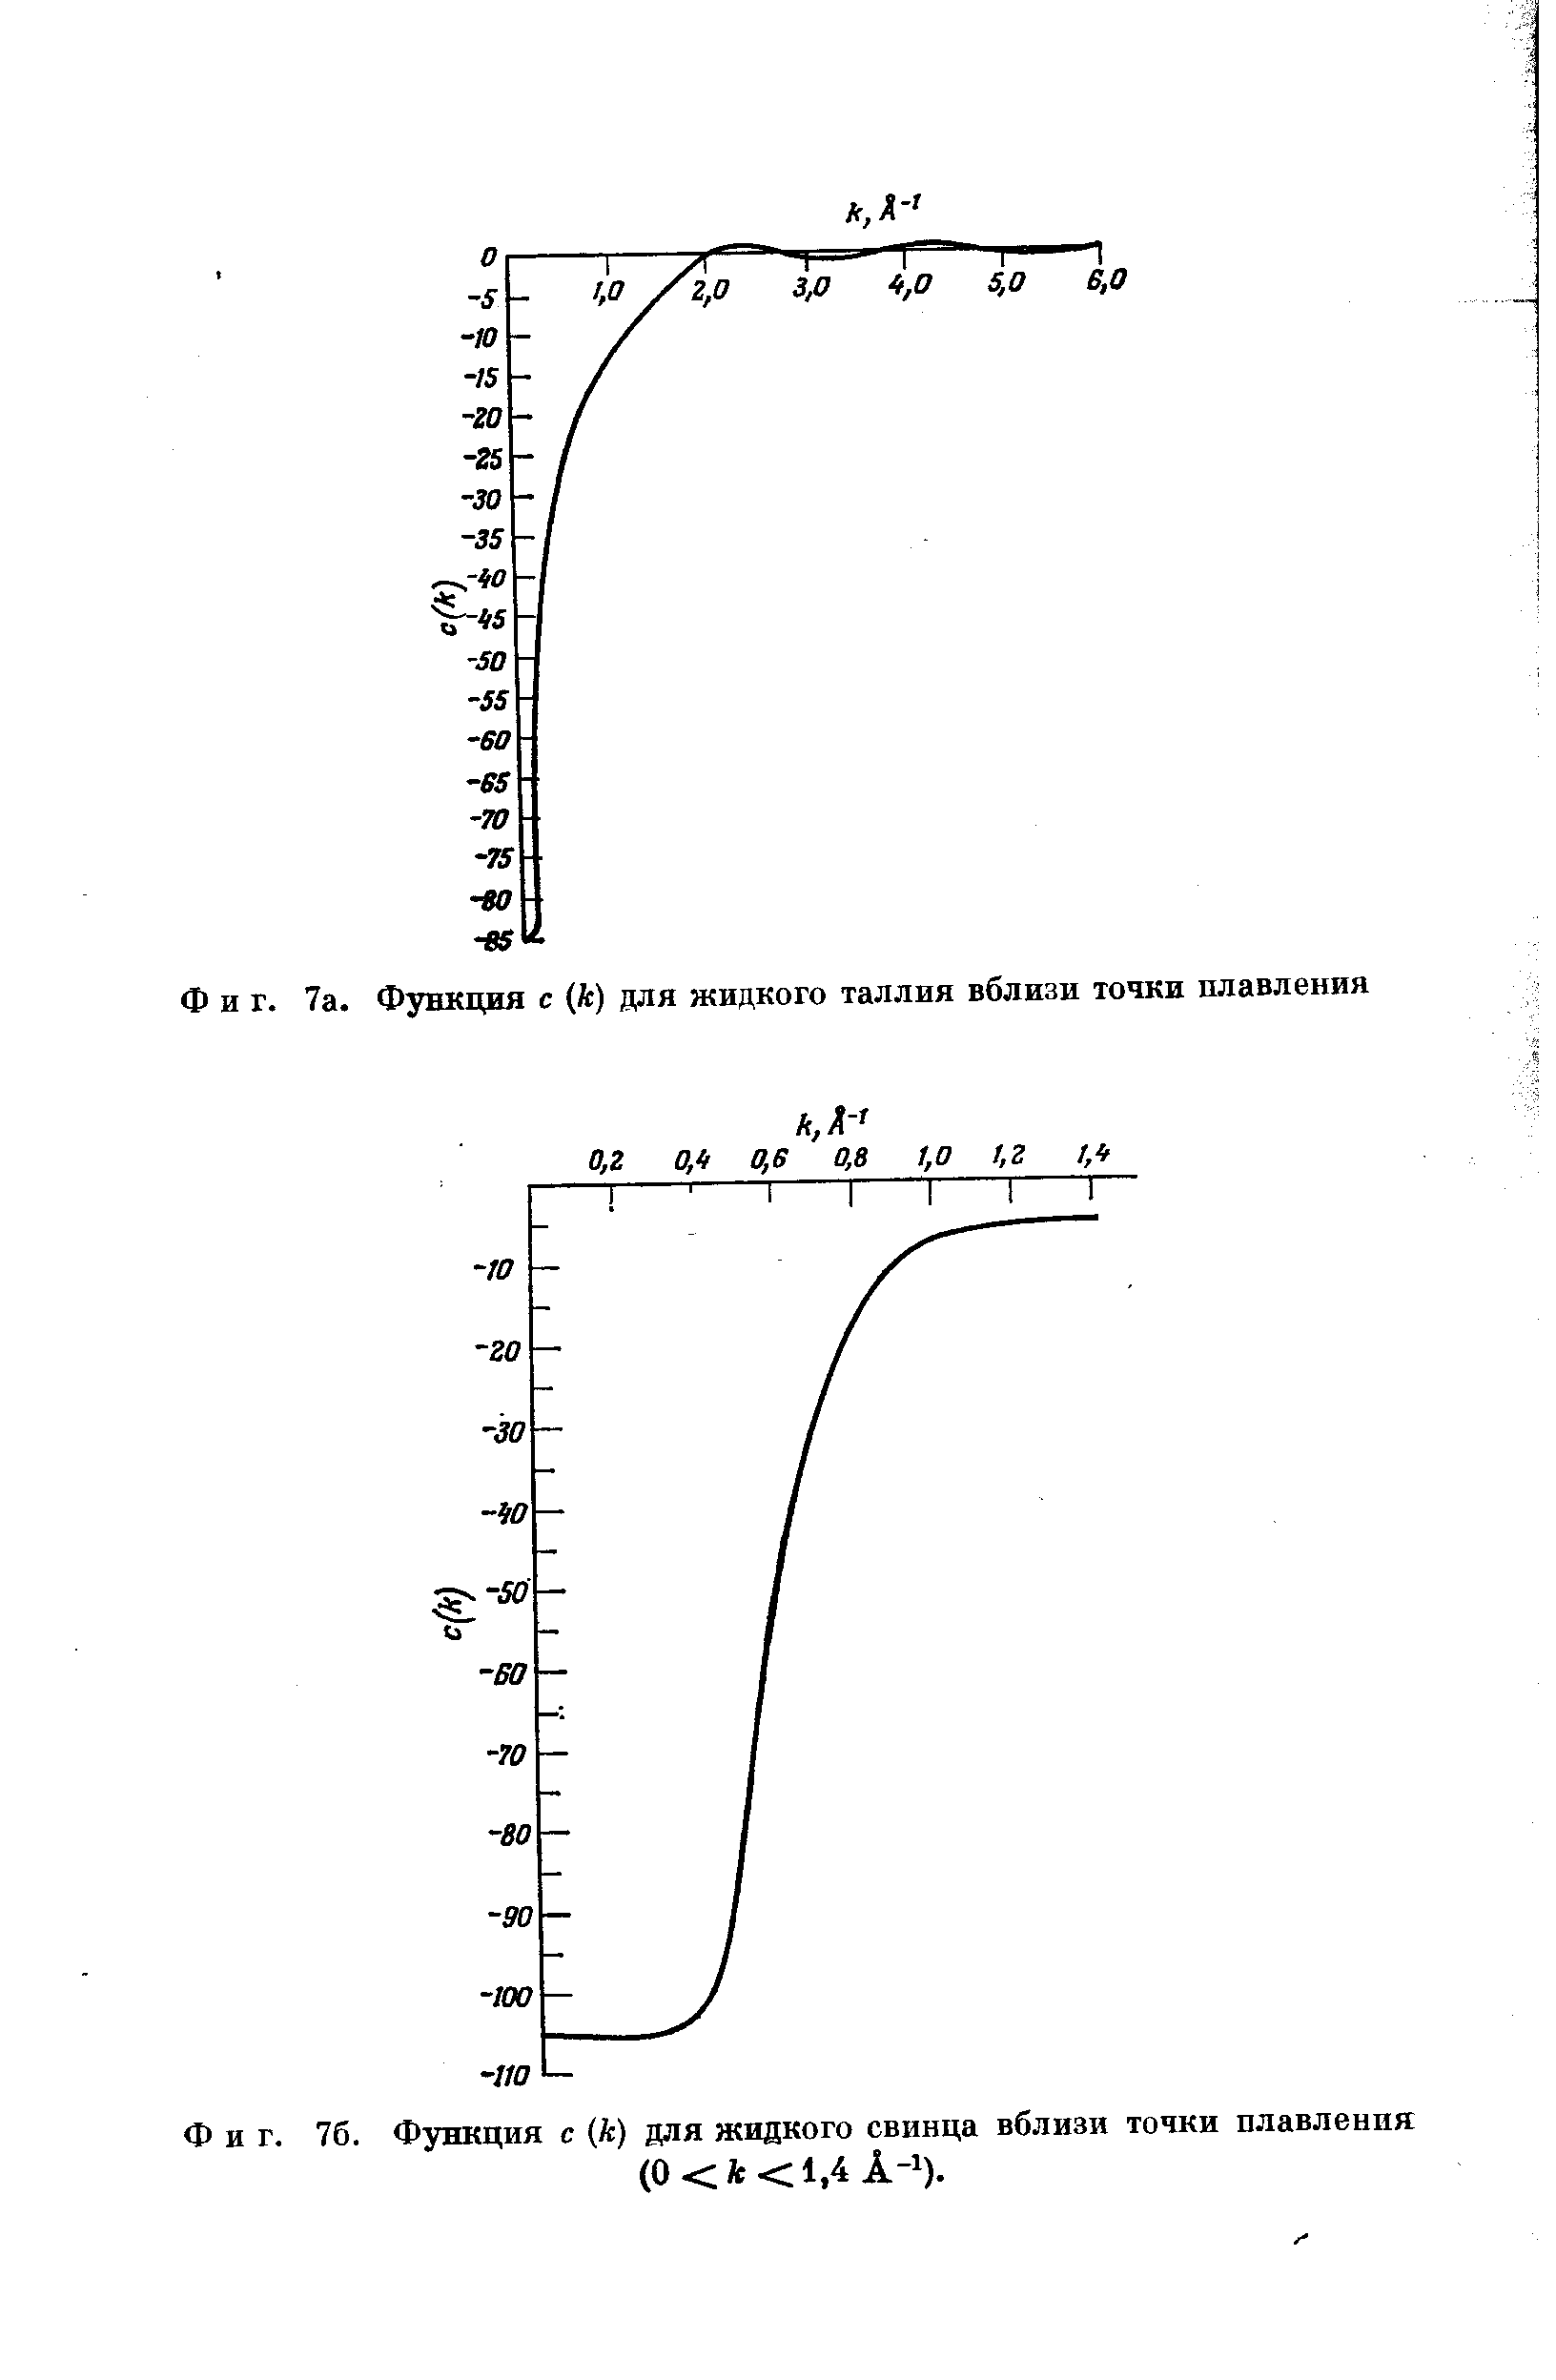 Фиг. 76. Функция с (к) для жидкого свинца вблизи точки плавления
